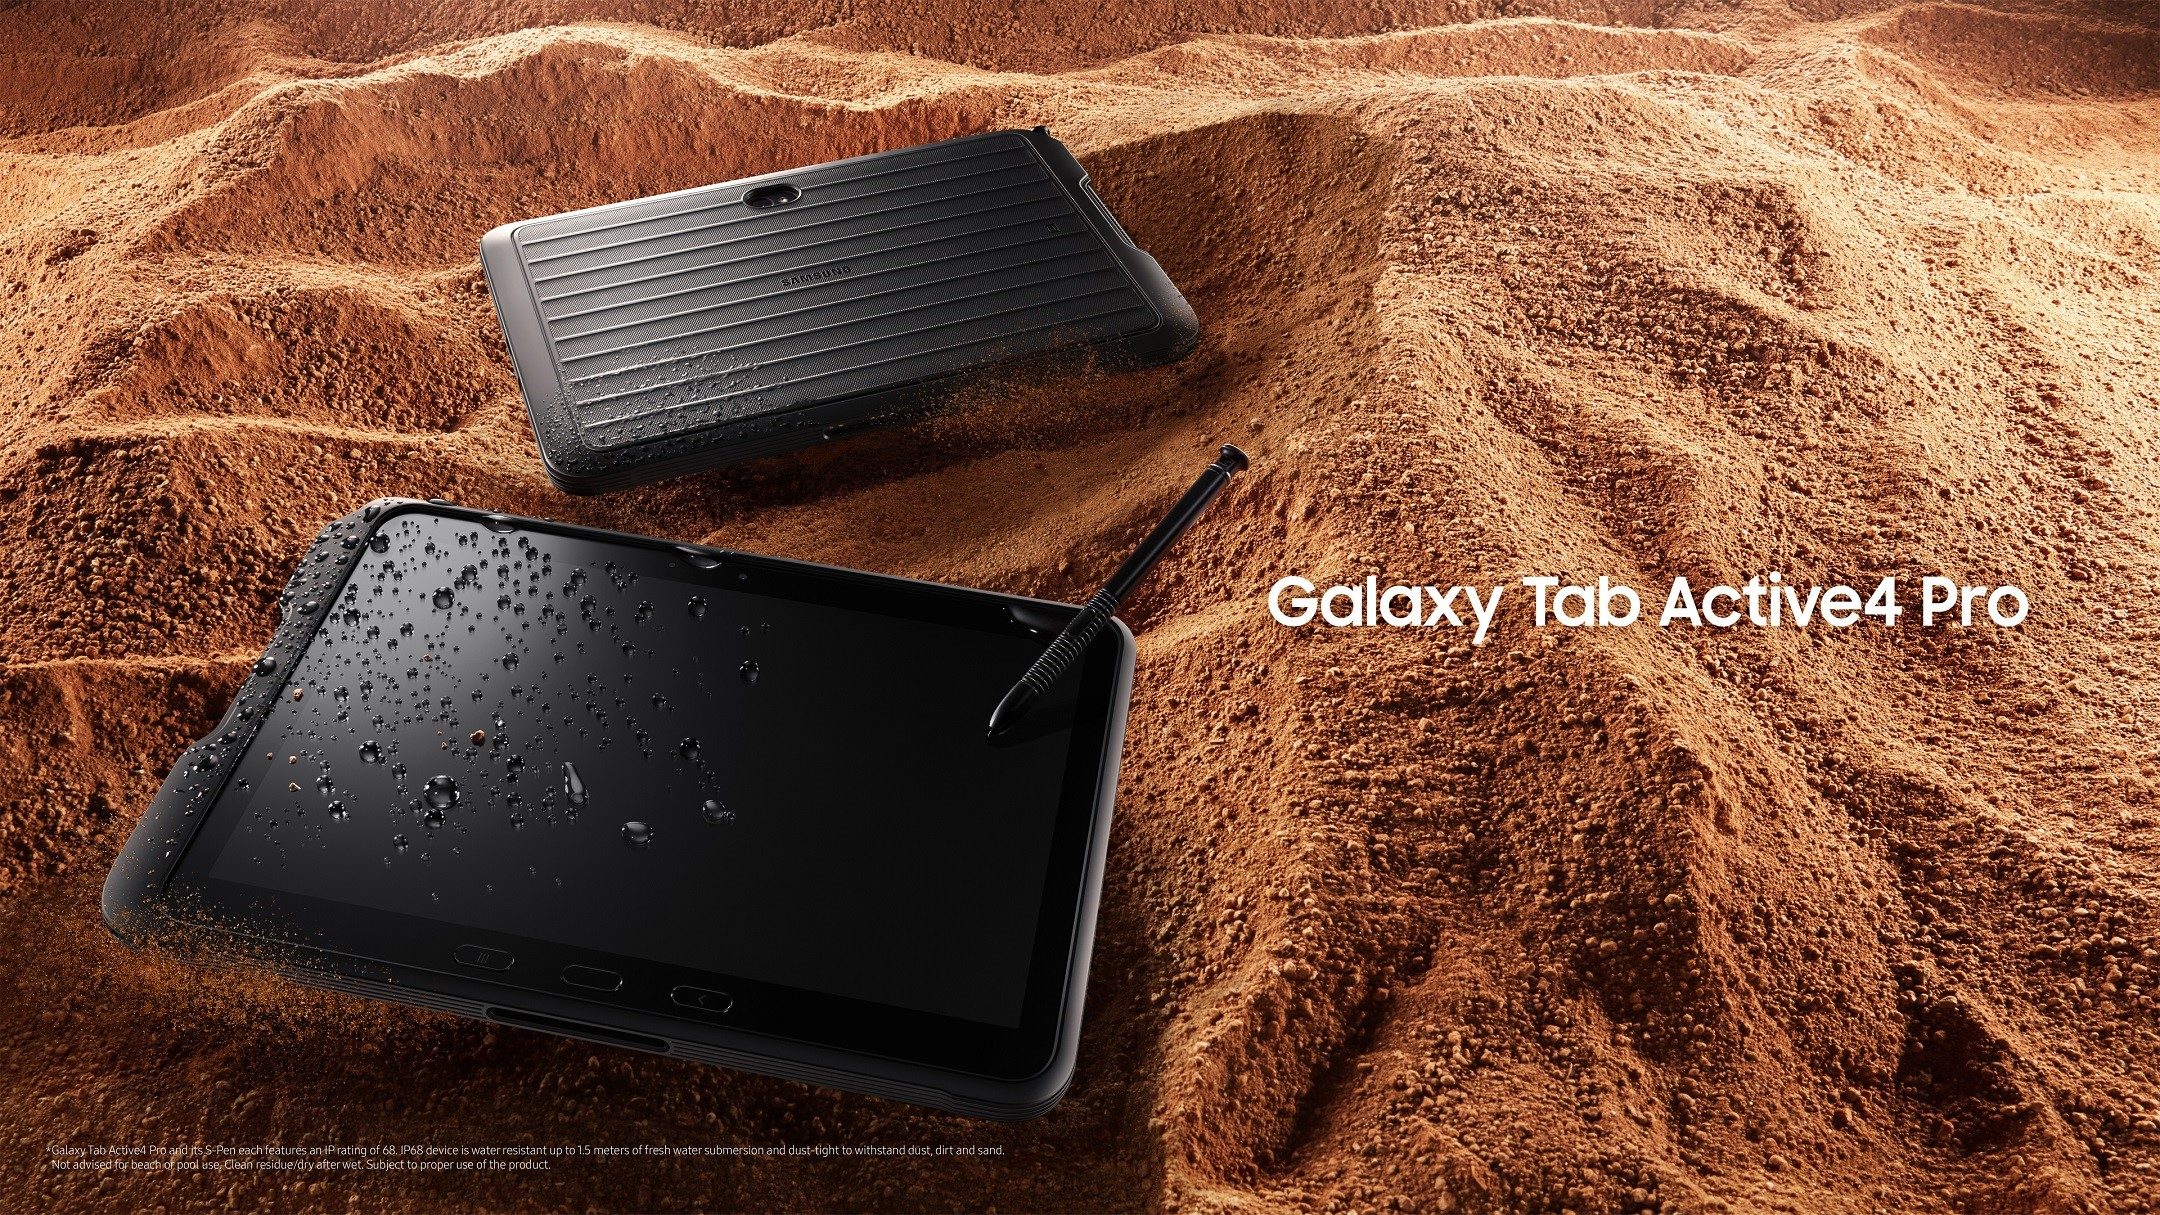 buiten gebruik Ik wil niet piramide Samsung lanceert robuuste tablet met Galaxy Tab Active 4 Pro | FWD